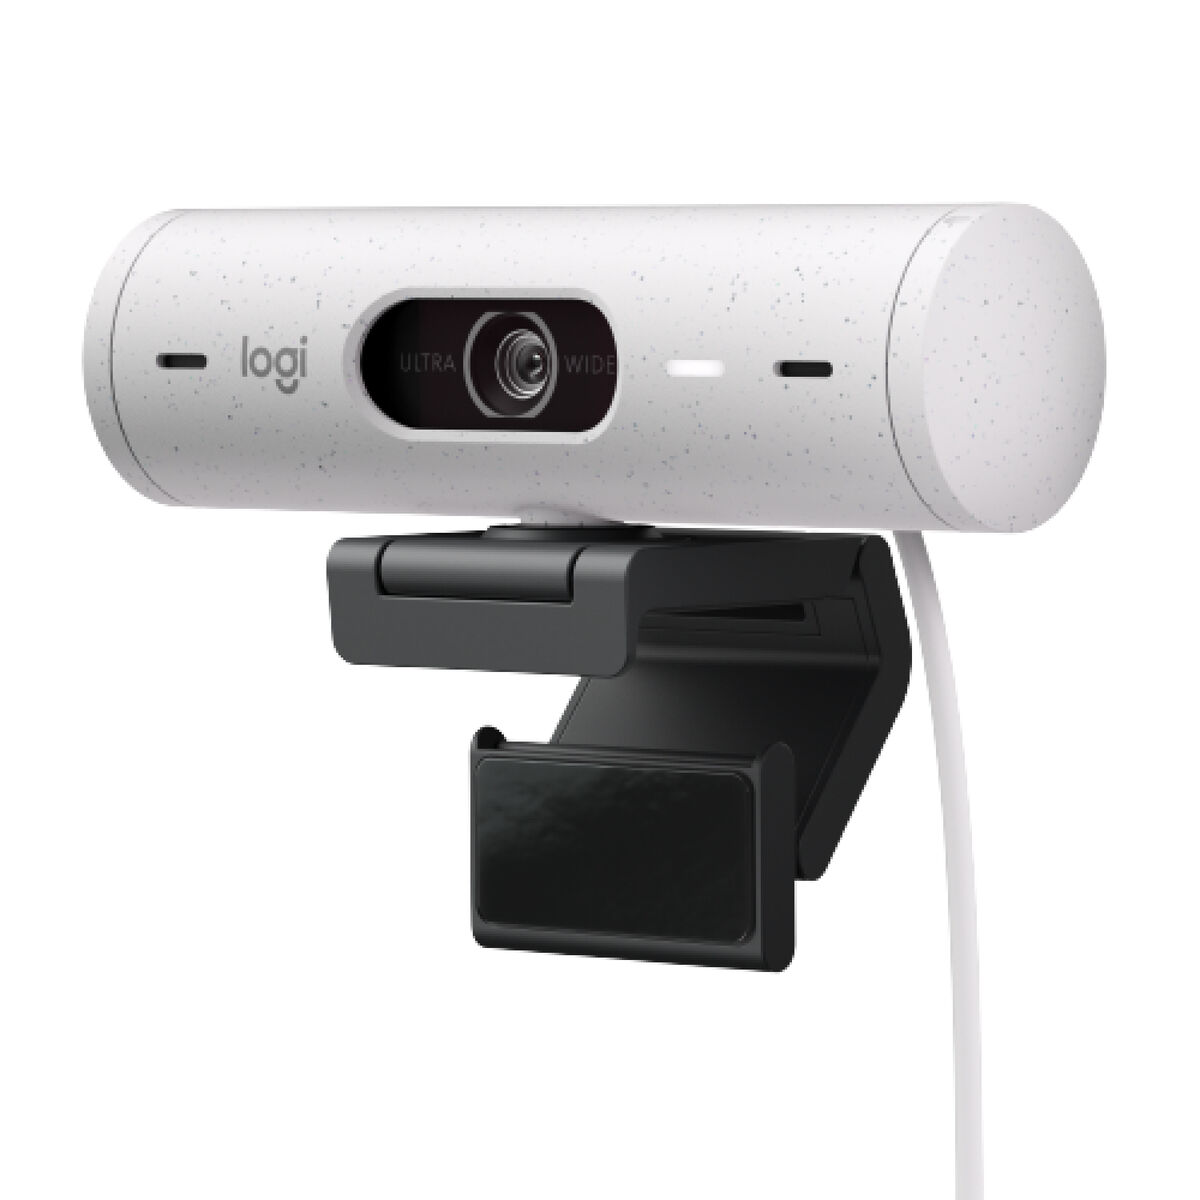 Webcam Logitech Brio 500 Blanc